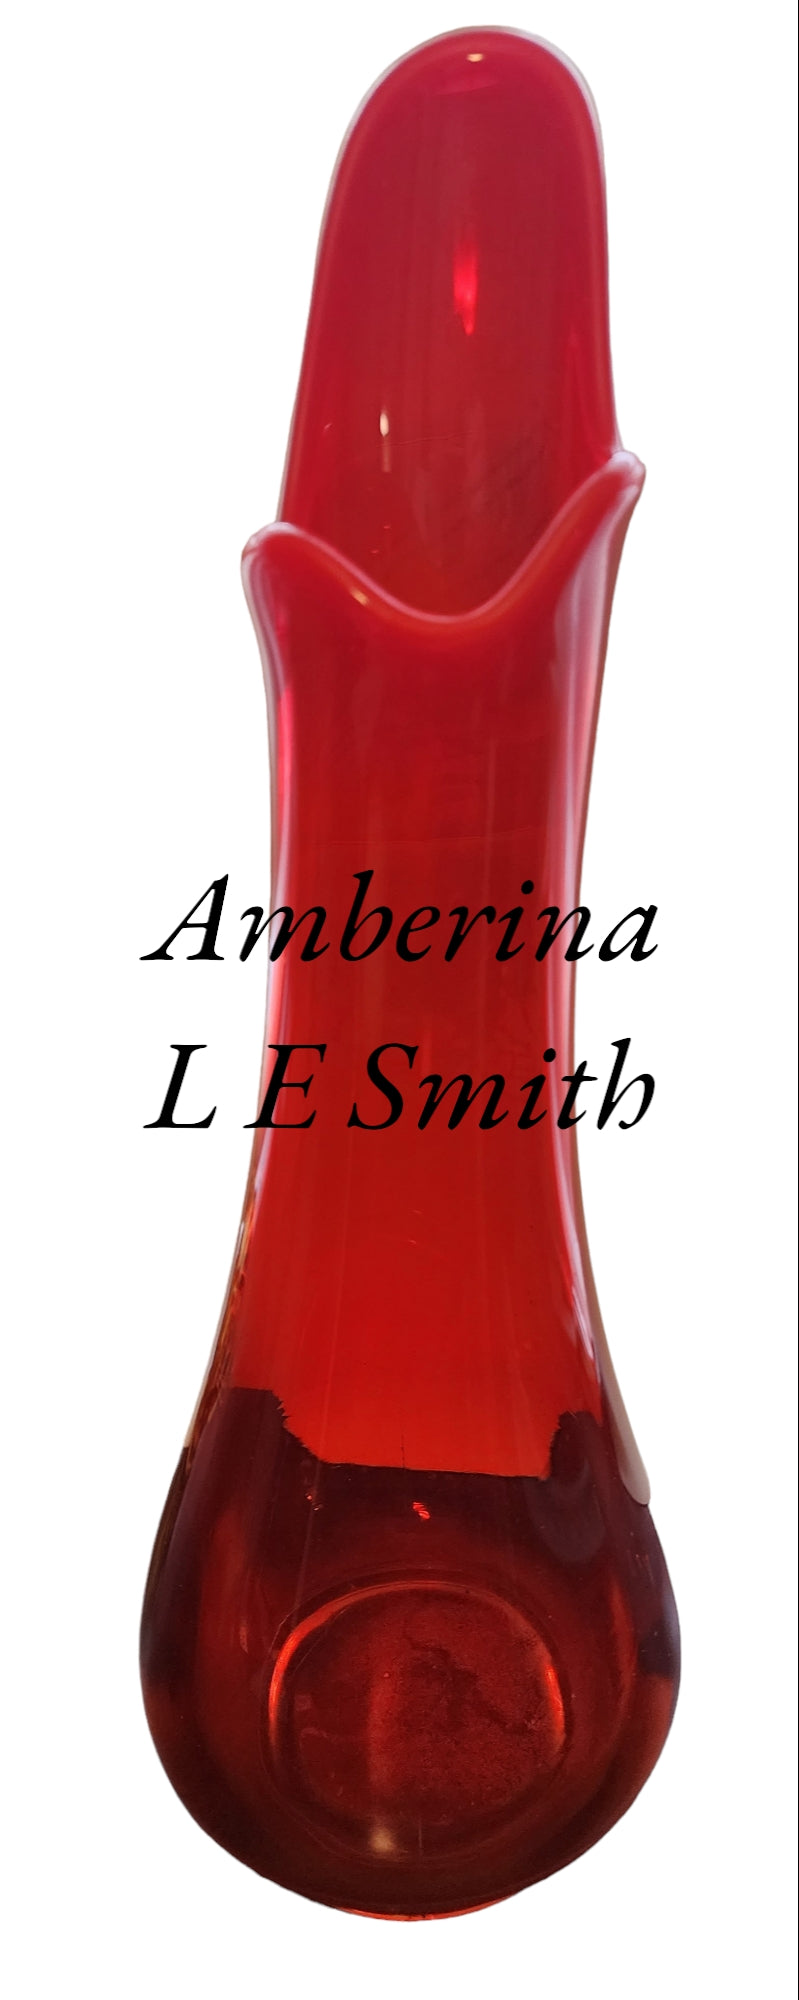 L.E Smith Glass Amberinea swung 14.5" vase